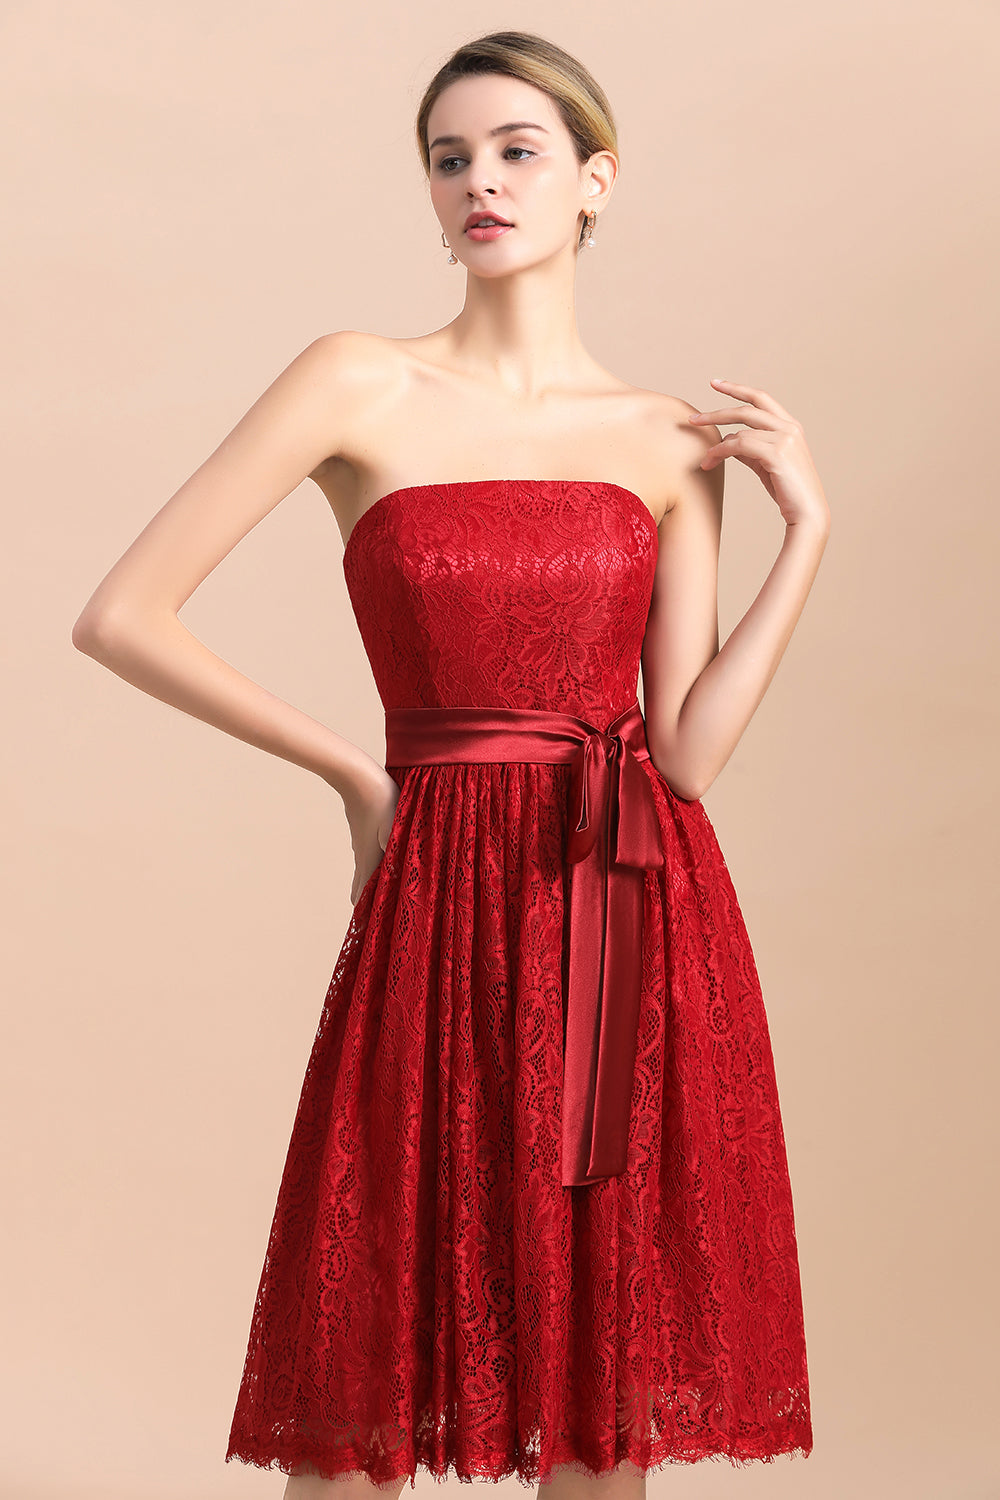 Finden Sie bei babyonlinedress.de Rote Brautjungfernkleider Kurz online. Günstiges Brautjungfernkleid aus chiffon maß geschneidert bestellen.